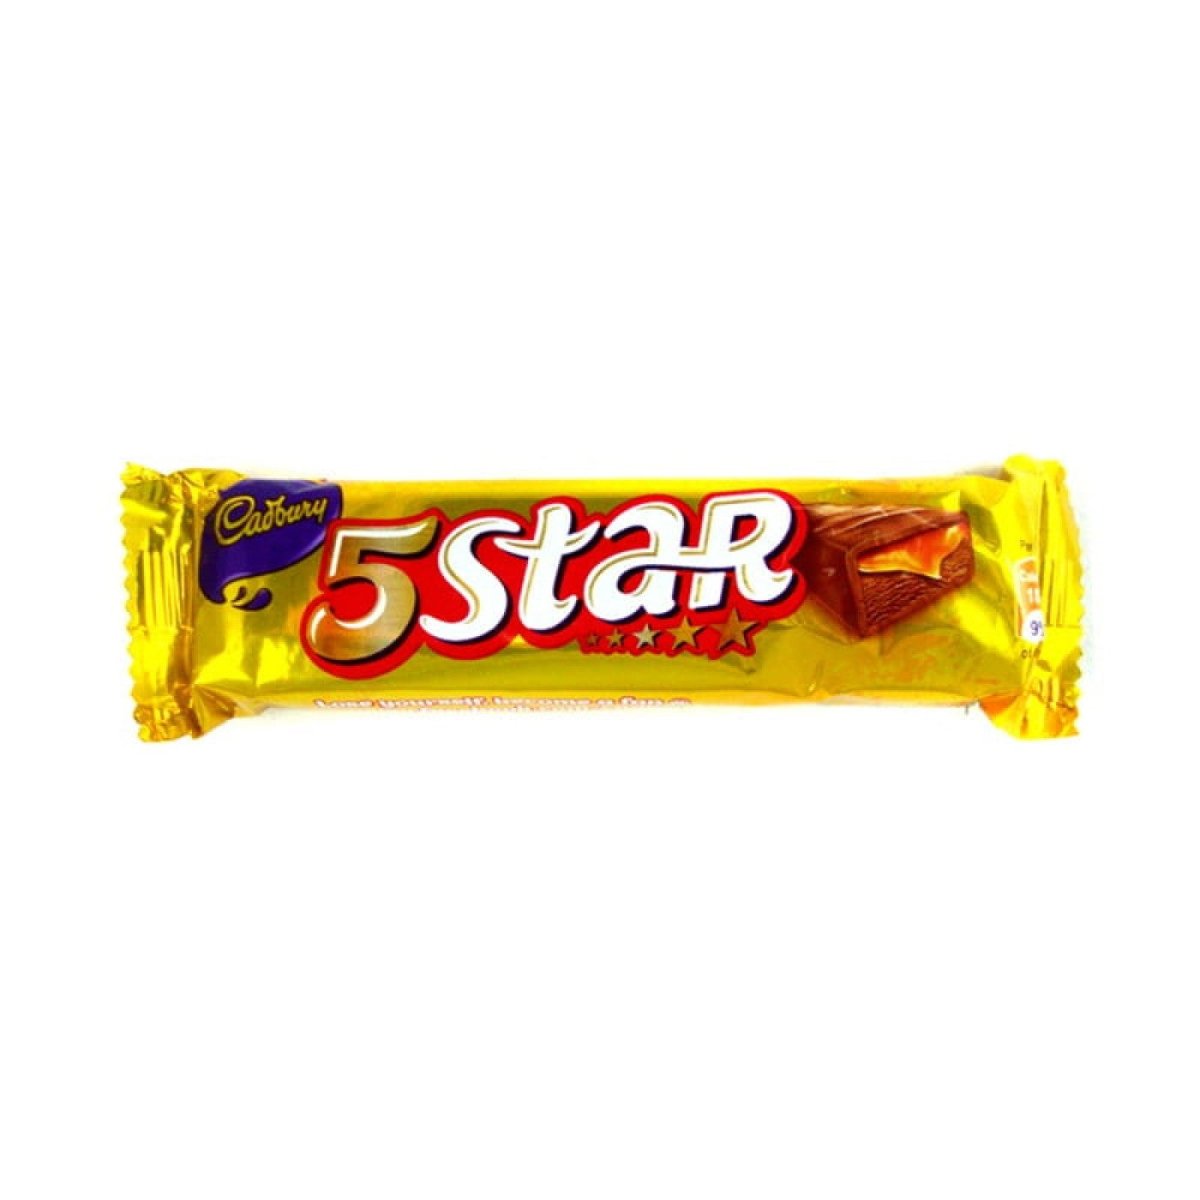 Cadbury's 5Star (India) 24g - Candy Mail UK